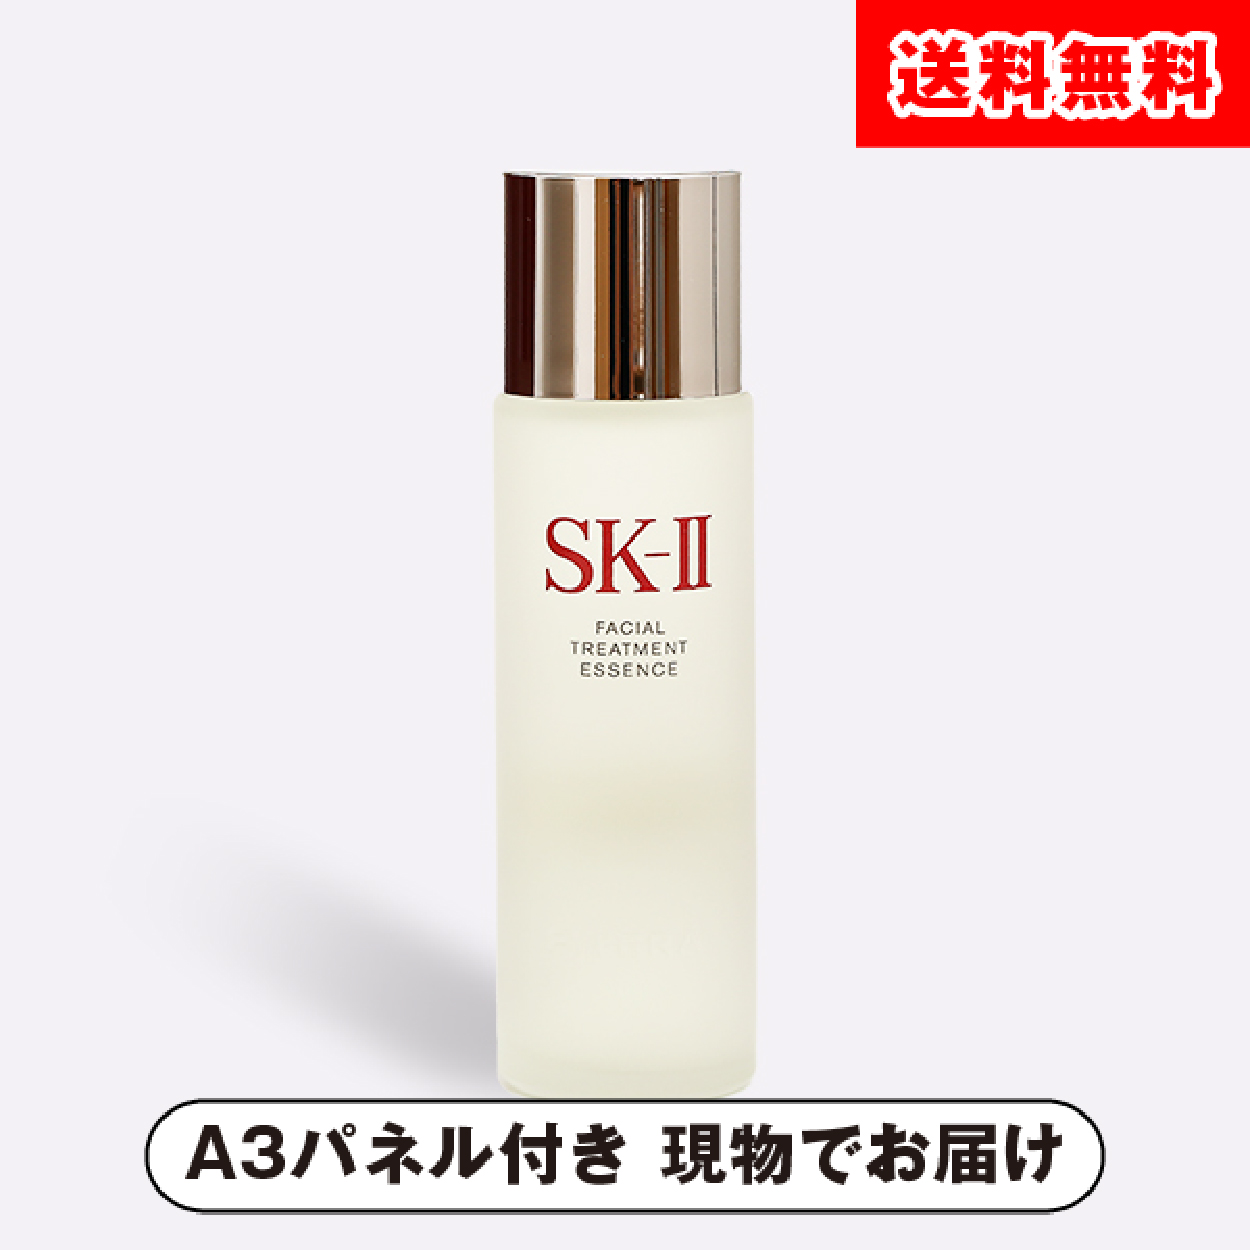 SK-II フェイシャル トリートメント エッセンス 75ml【パネル付】|景品 ...